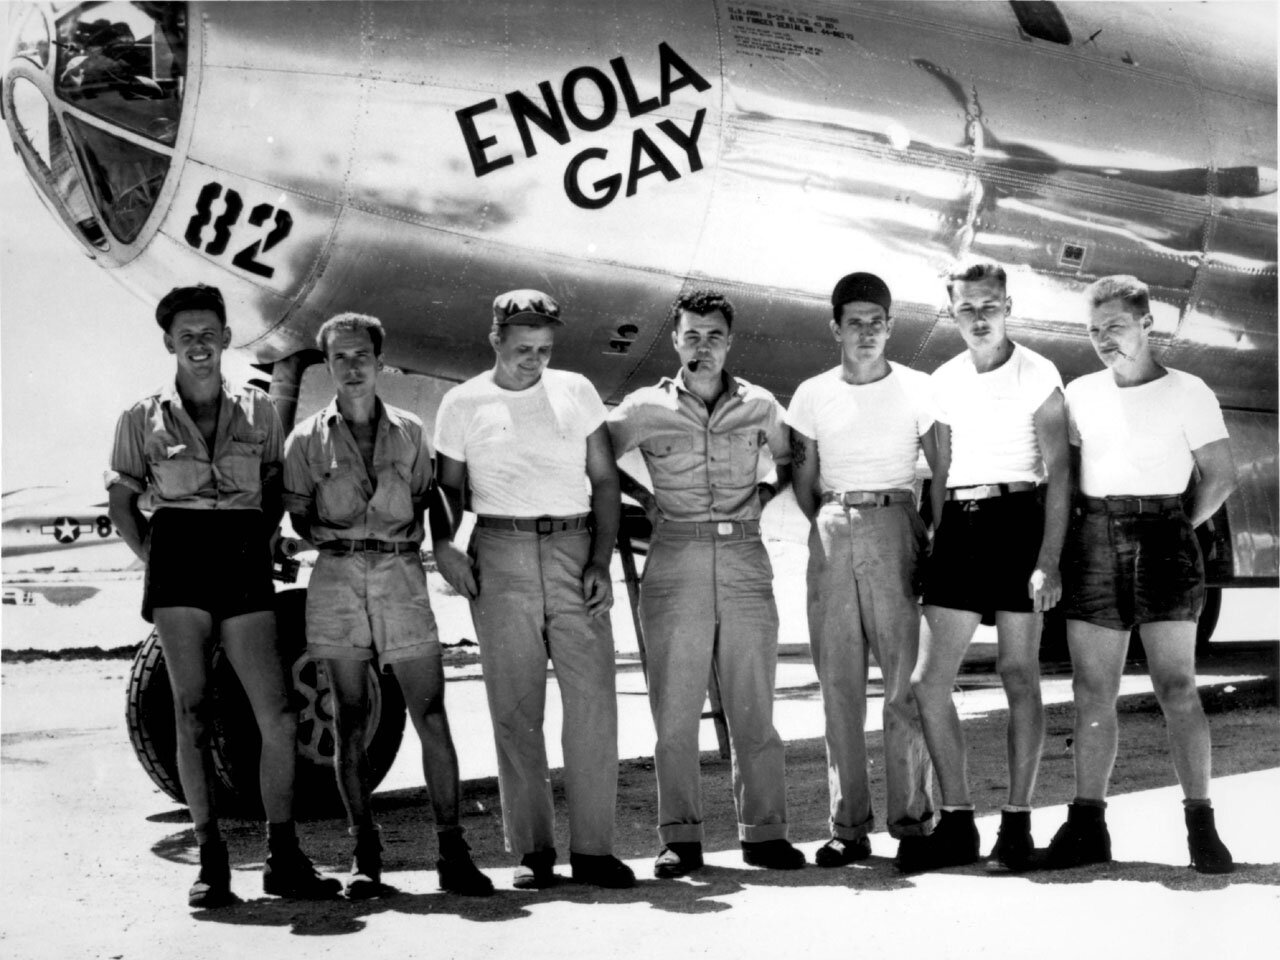 Siedmiu  mężczyzn pozuje do zdjęcia na tle kadłuba samolotu. Większość z nich ubranych jest w letnie stroje - podkoszulki, krótkie spodnie. Stoją w równym szeregu, w swobodnych pozach. Na kadłubie samolotu widnieje napis: ENOLA GAY i numer 82.